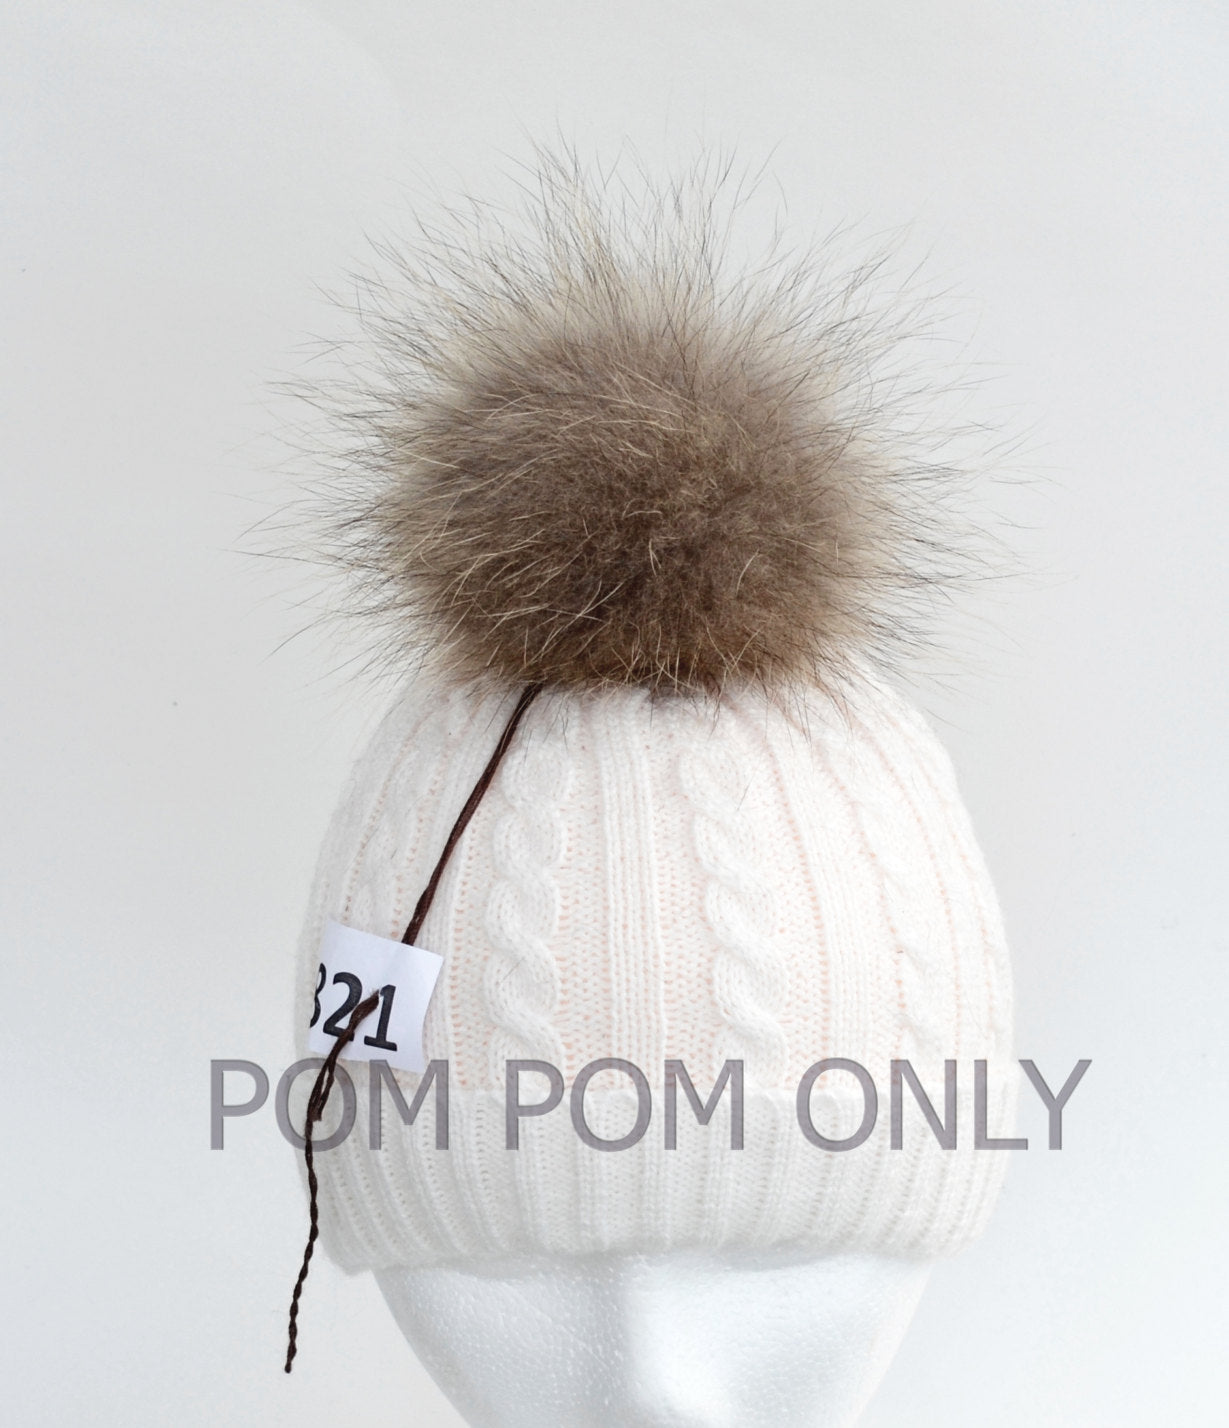 7 Raccoon Pom Pom! Large Pom Pom Hat Raccoon Pompom Natural Fur